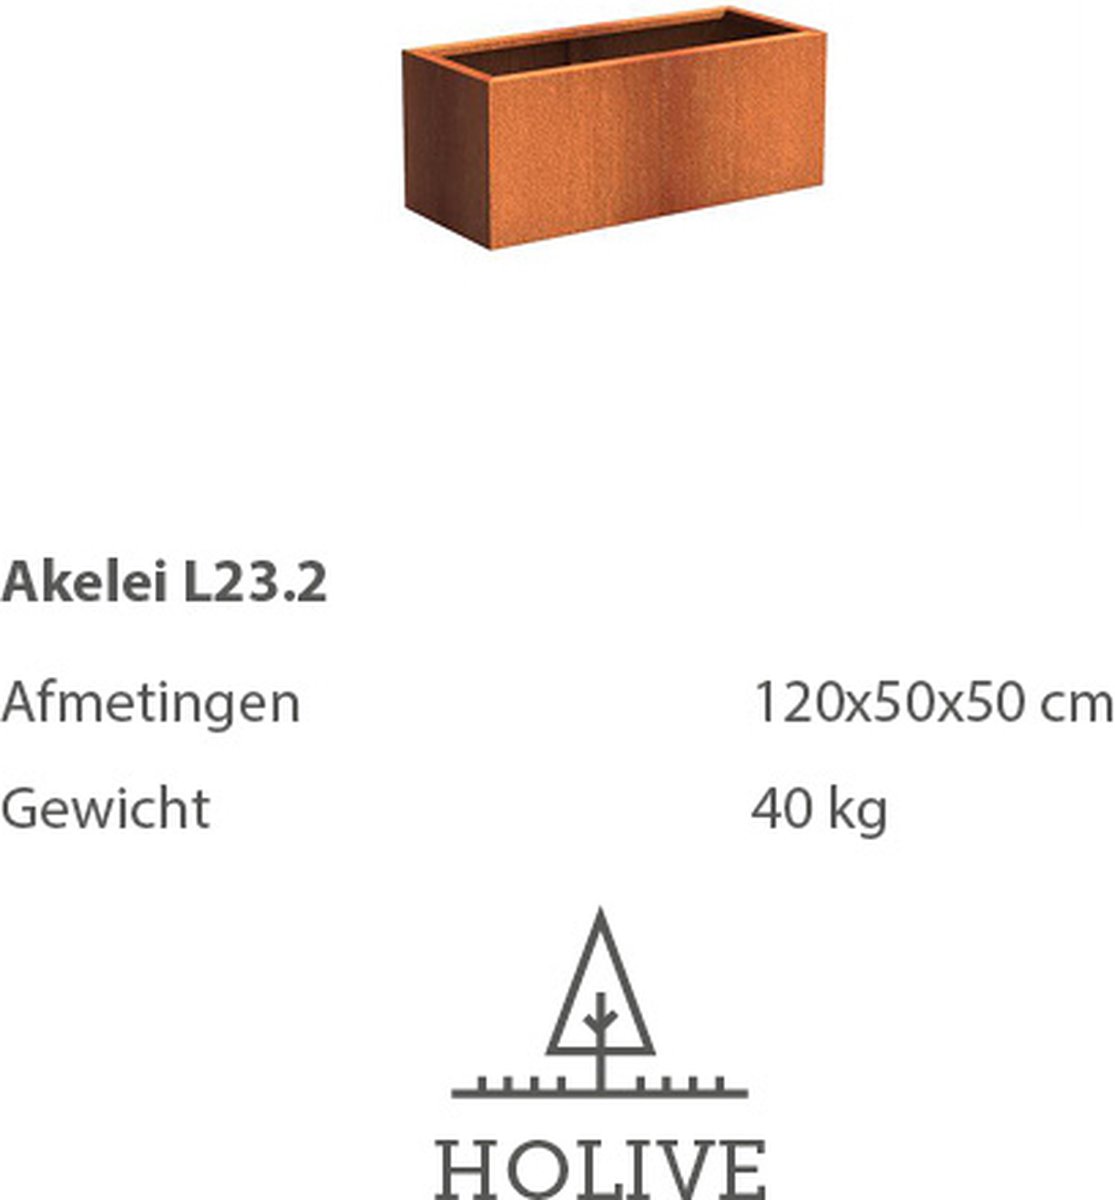 Cortenstaal Akelei L23.2 Rechthoek 120x50x50 cm. Plantenbak